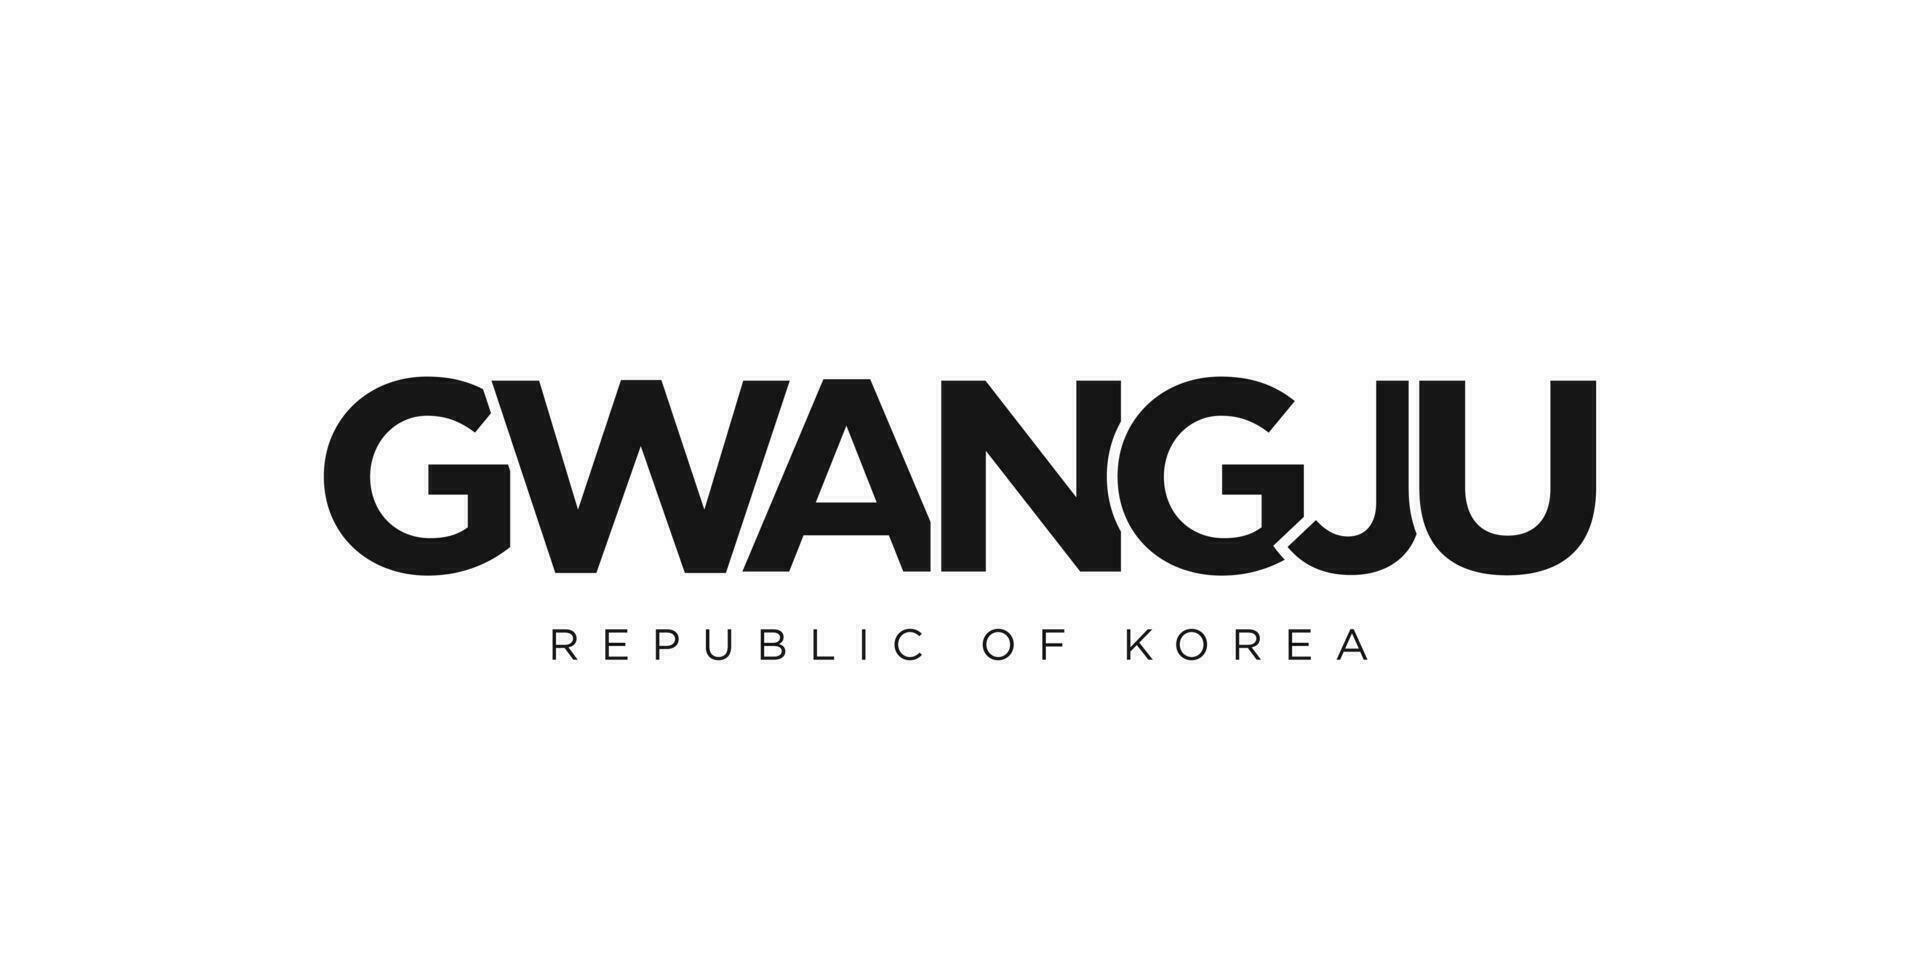 gwangju dans le Corée emblème. le conception Caractéristiques une géométrique style, vecteur illustration avec audacieux typographie dans une moderne Police de caractère. le graphique slogan caractères.